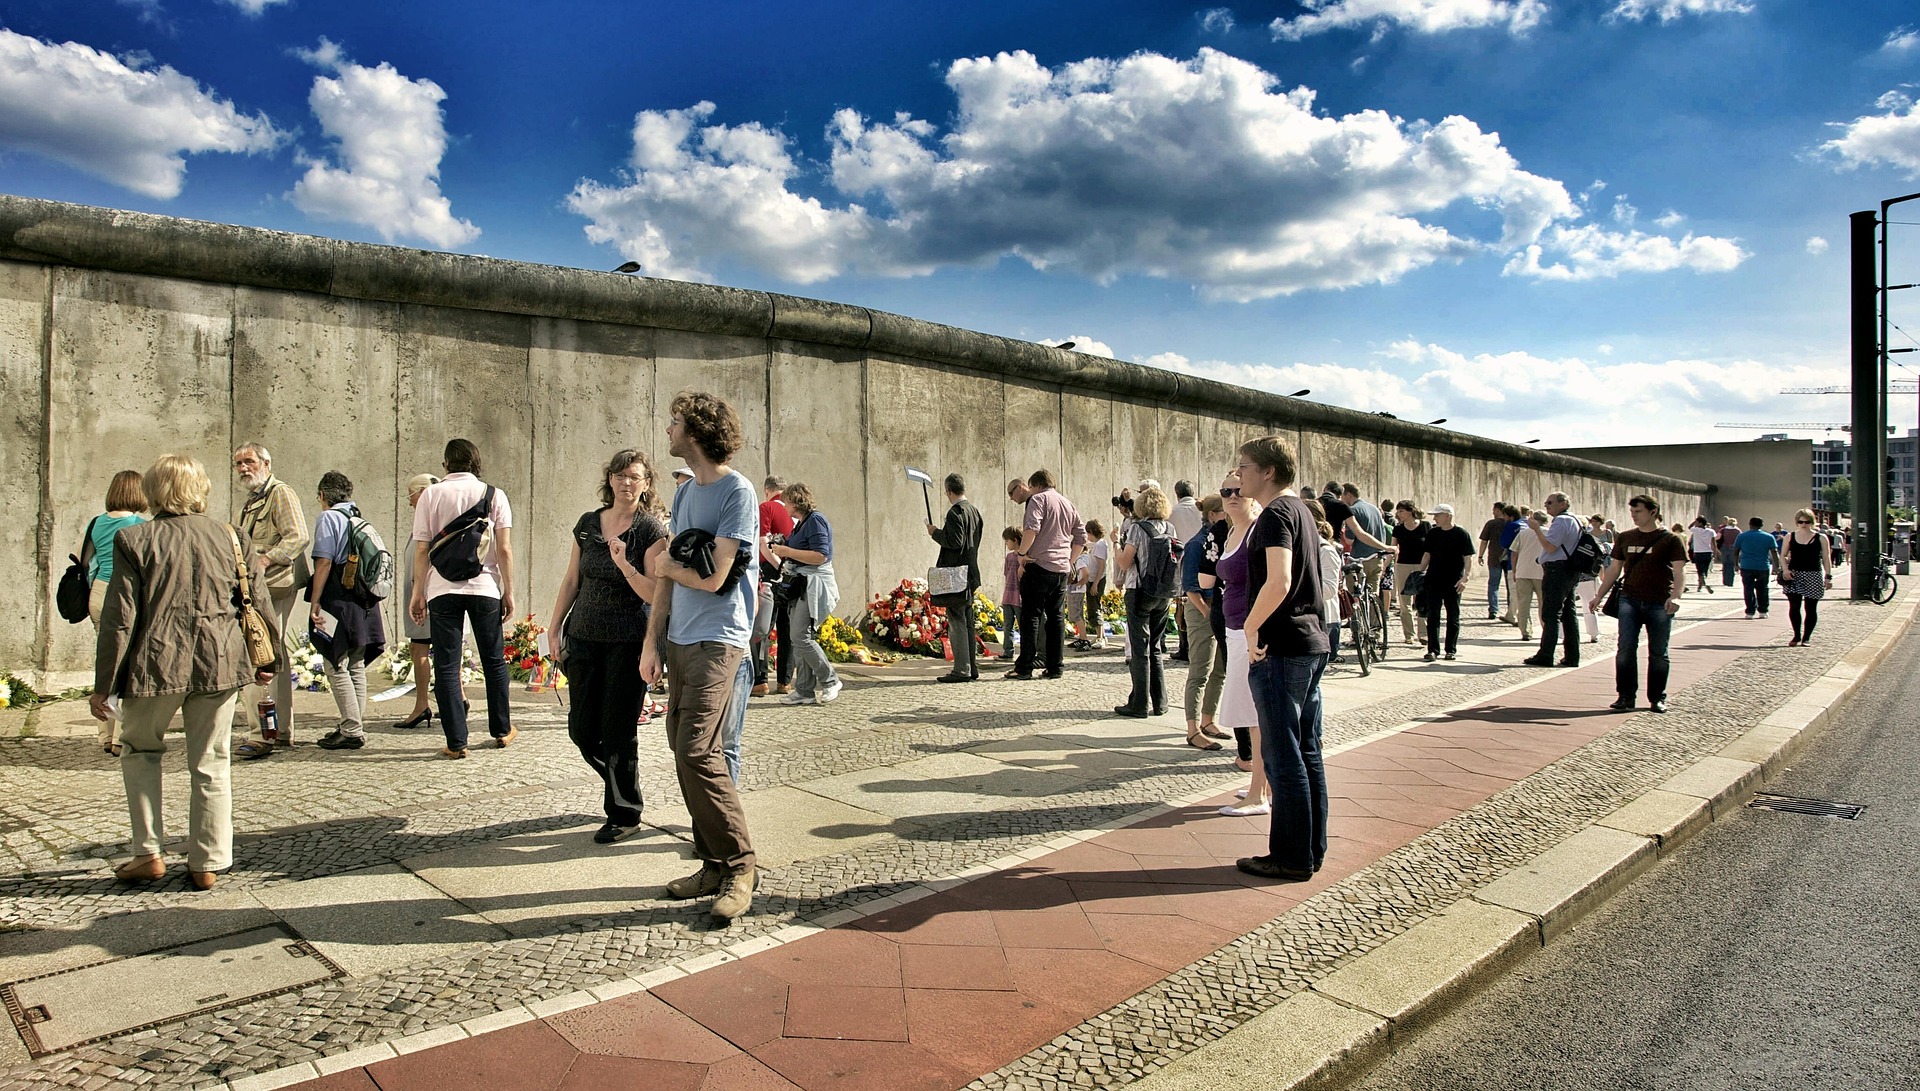 Berlínská zeď: Dvě strany jedné historie